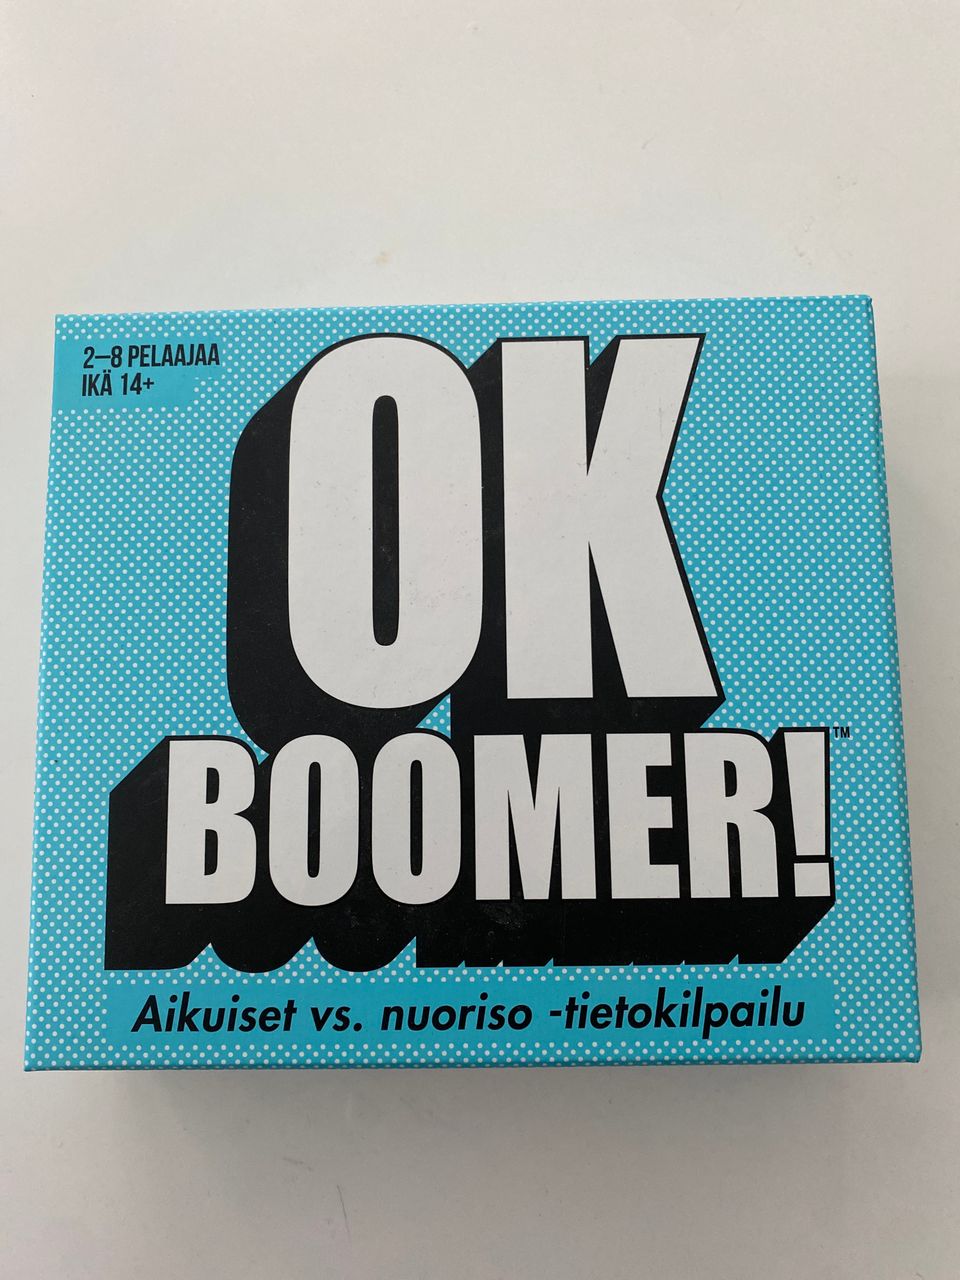 Ok boomer! -tietokilpailupeli